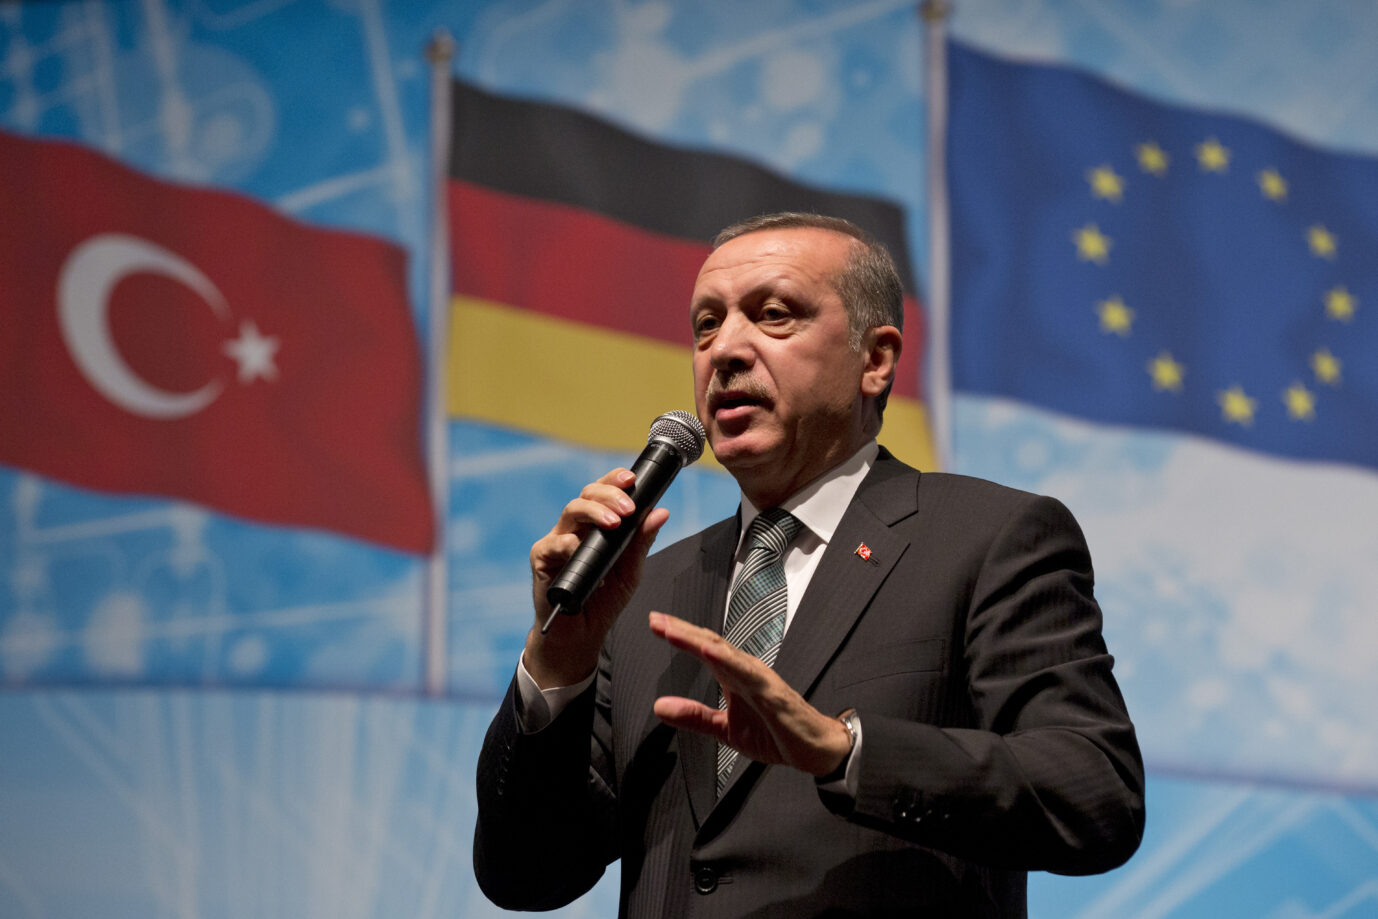 Der Präsident der Türkei, Recep Tayyip Erdoğan (AKP), 2014 bei einer Wahlkampfveranstaltung in Berlin Foto: picture alliance / AP Photo | Axel Schmidt